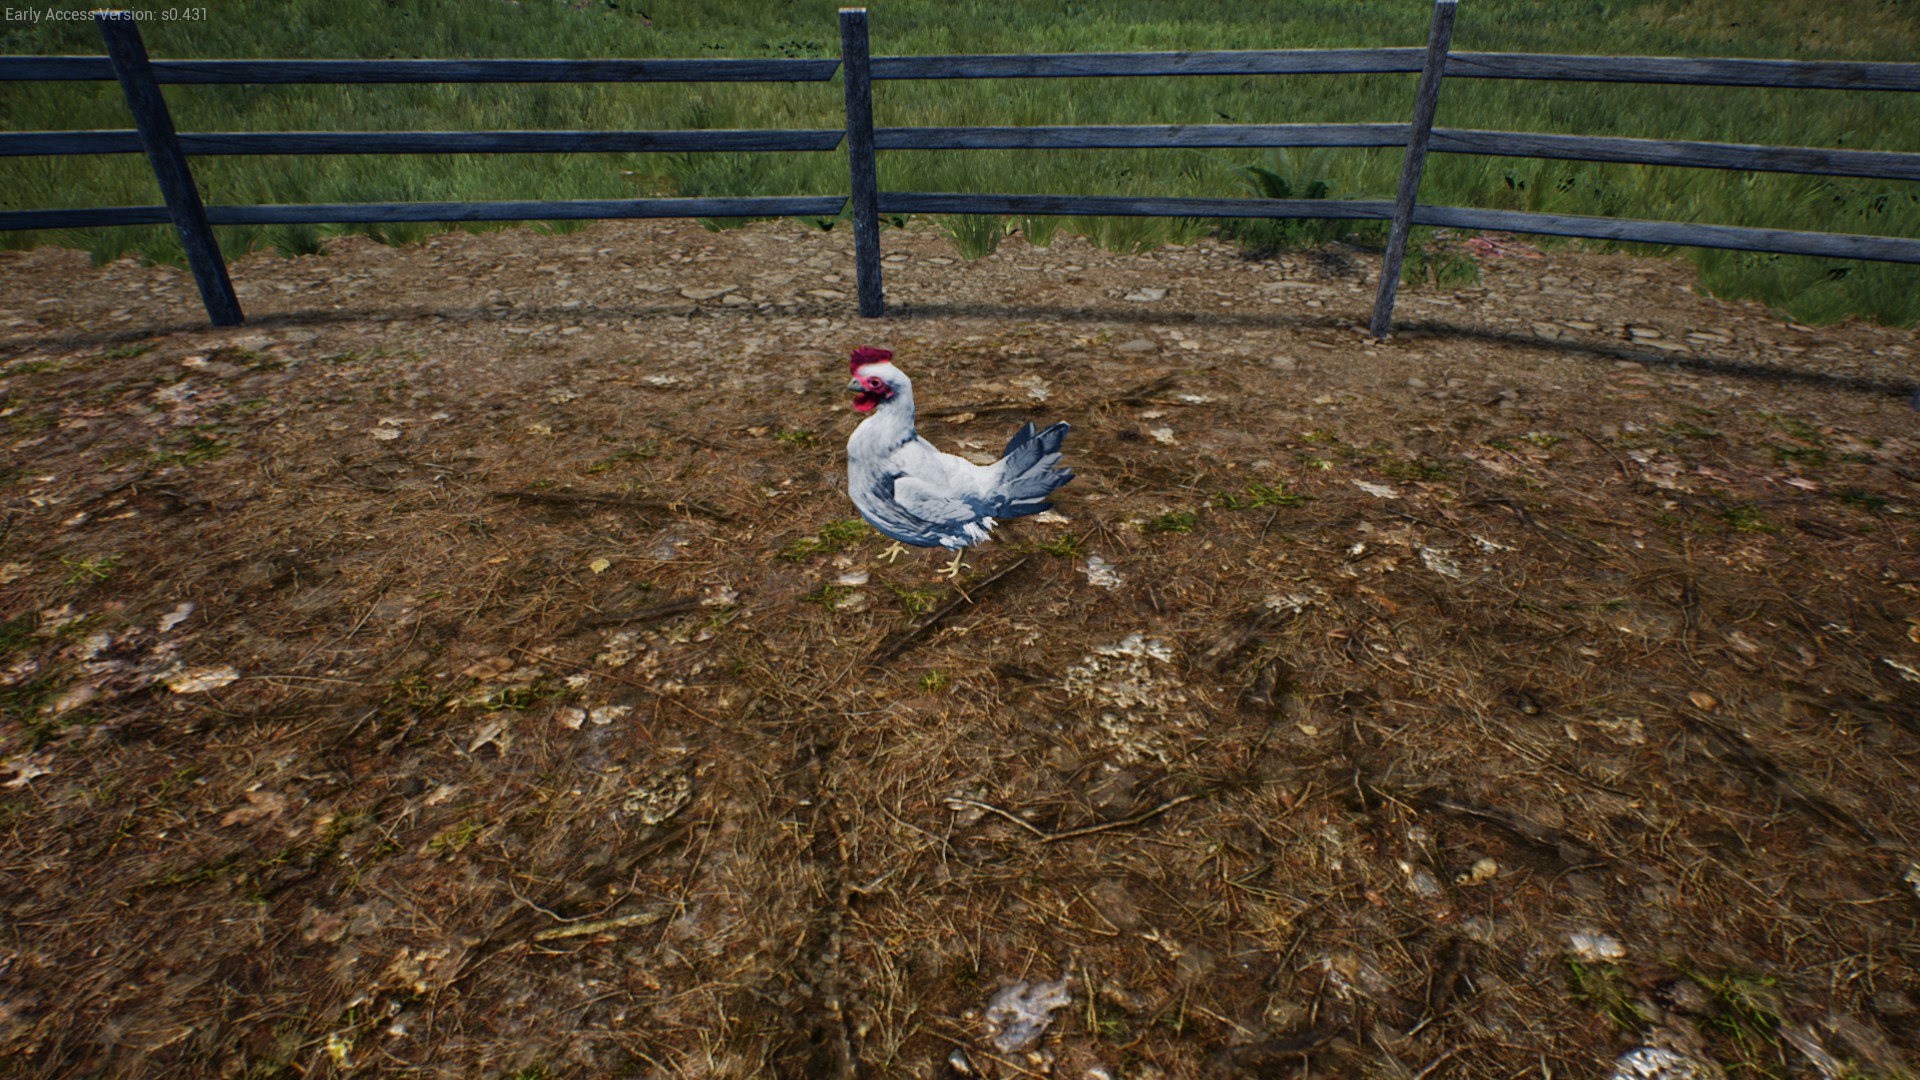 Ranch Simulator - Full Guide & Walkthrough - Chickens + Chicken Coop - 59926B8